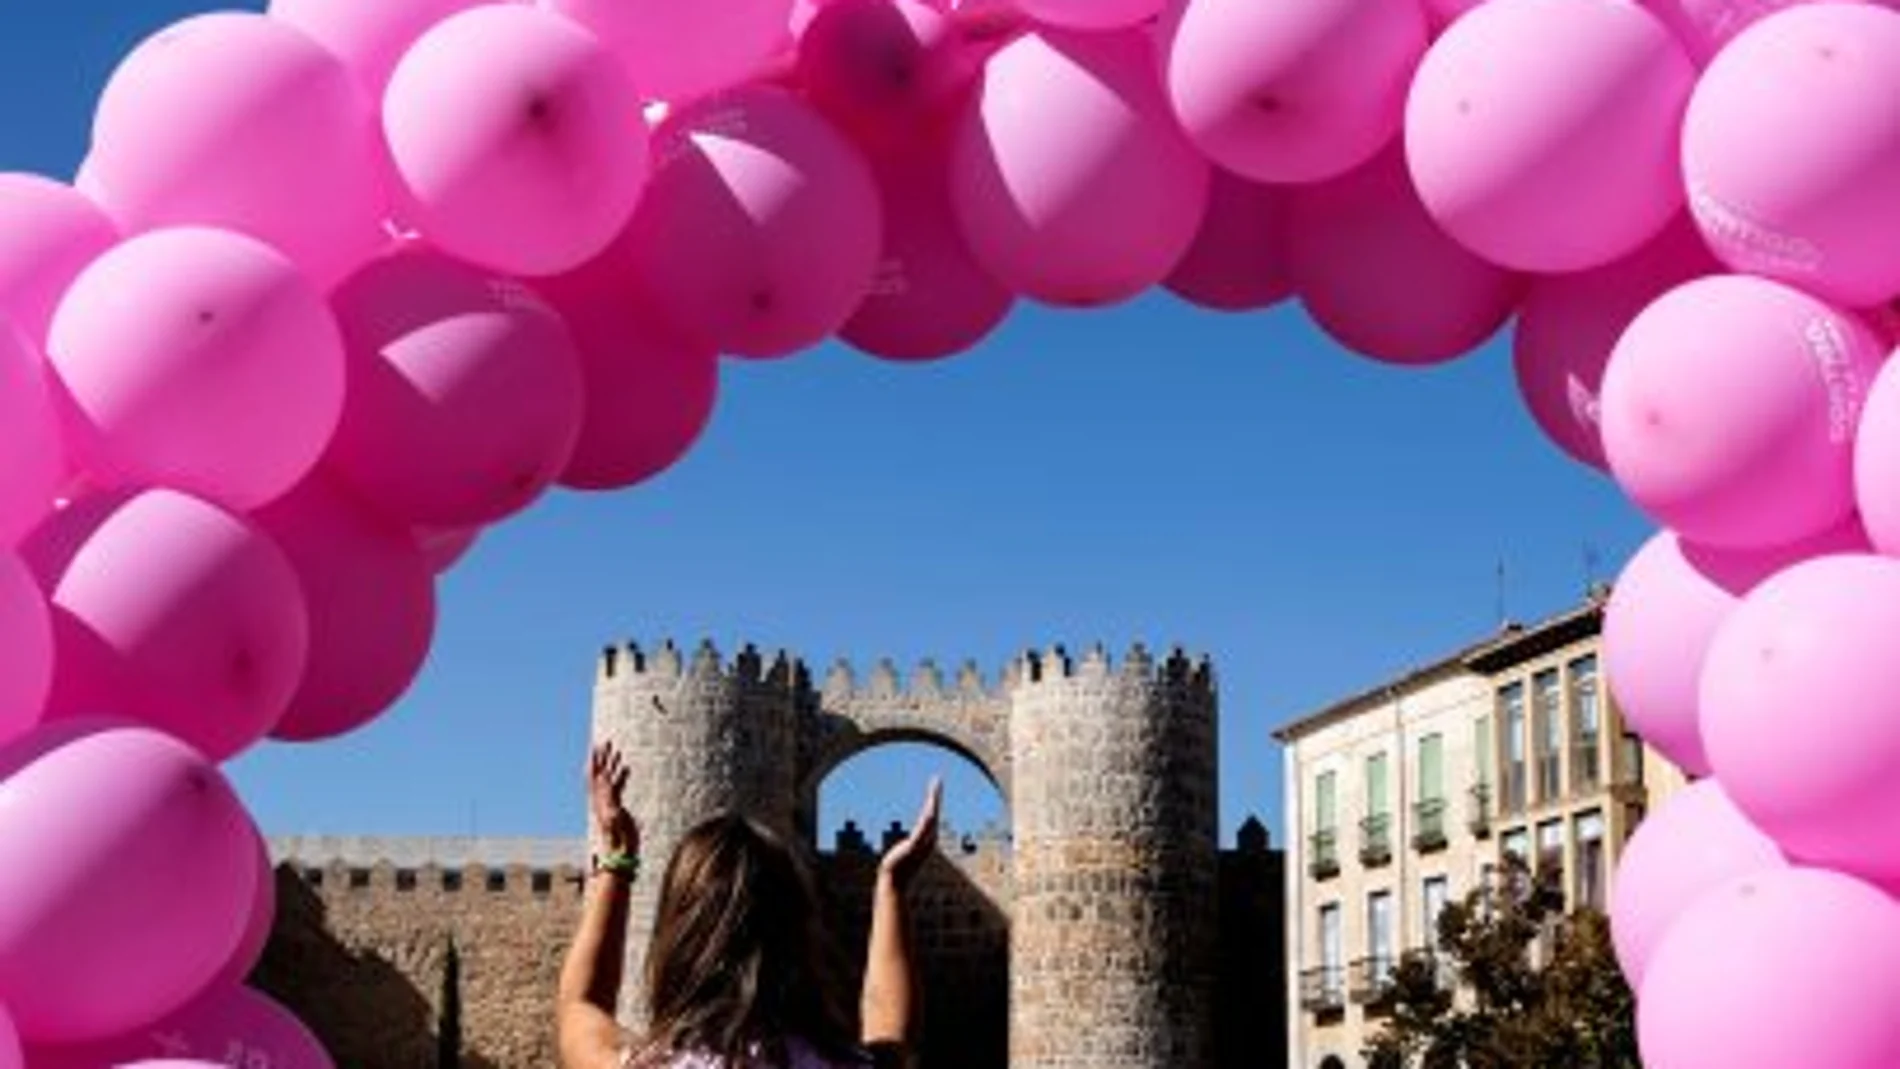 Miles de abulenses en la plaza de Santa Teresa, junto a los lienzos este y sur de la muralla de Ávila para "abrazar"al principal monumento de la capital abulense contra el cáncer de mama, en una iniciativa organizada por la Asociación Española contra el Cáncer (AECC)